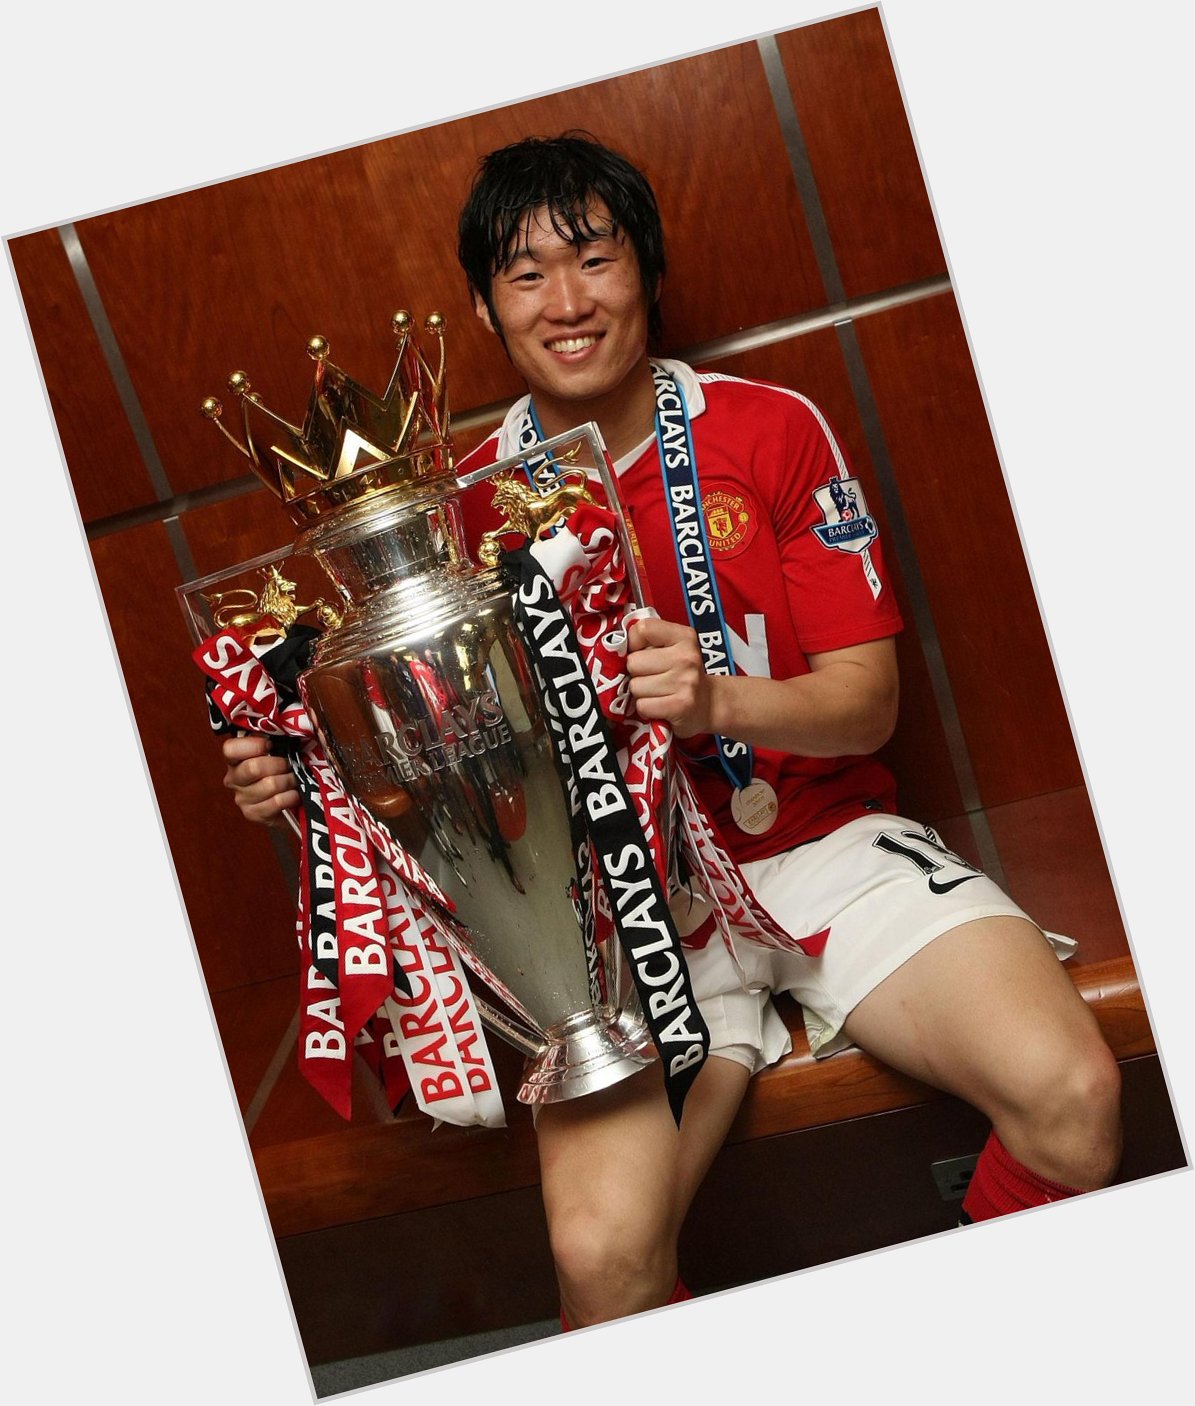 Happy birthday Ji sung Park.

To all Manchester United fans na wapinzani unakumbuka nini kutoka kwa huyu mtu?? 